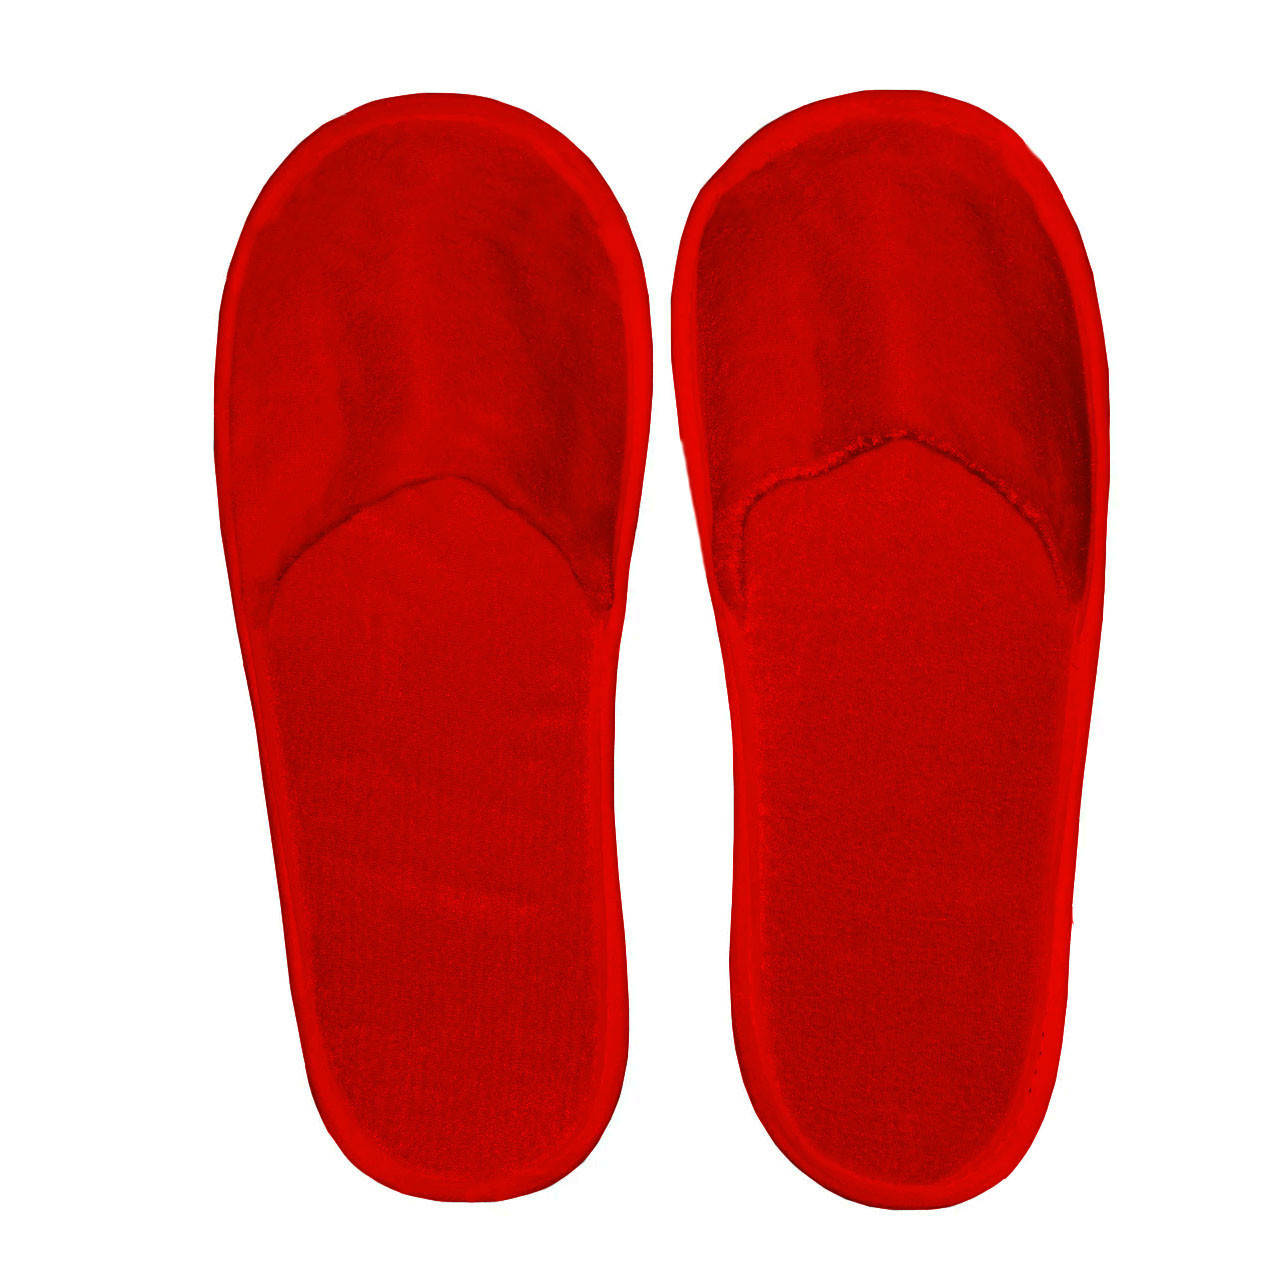 

Тапочки одноразовые, велюровые, для гостиниц, закрытые, универсальные тапочки Rolli 1 пара, красный цвет